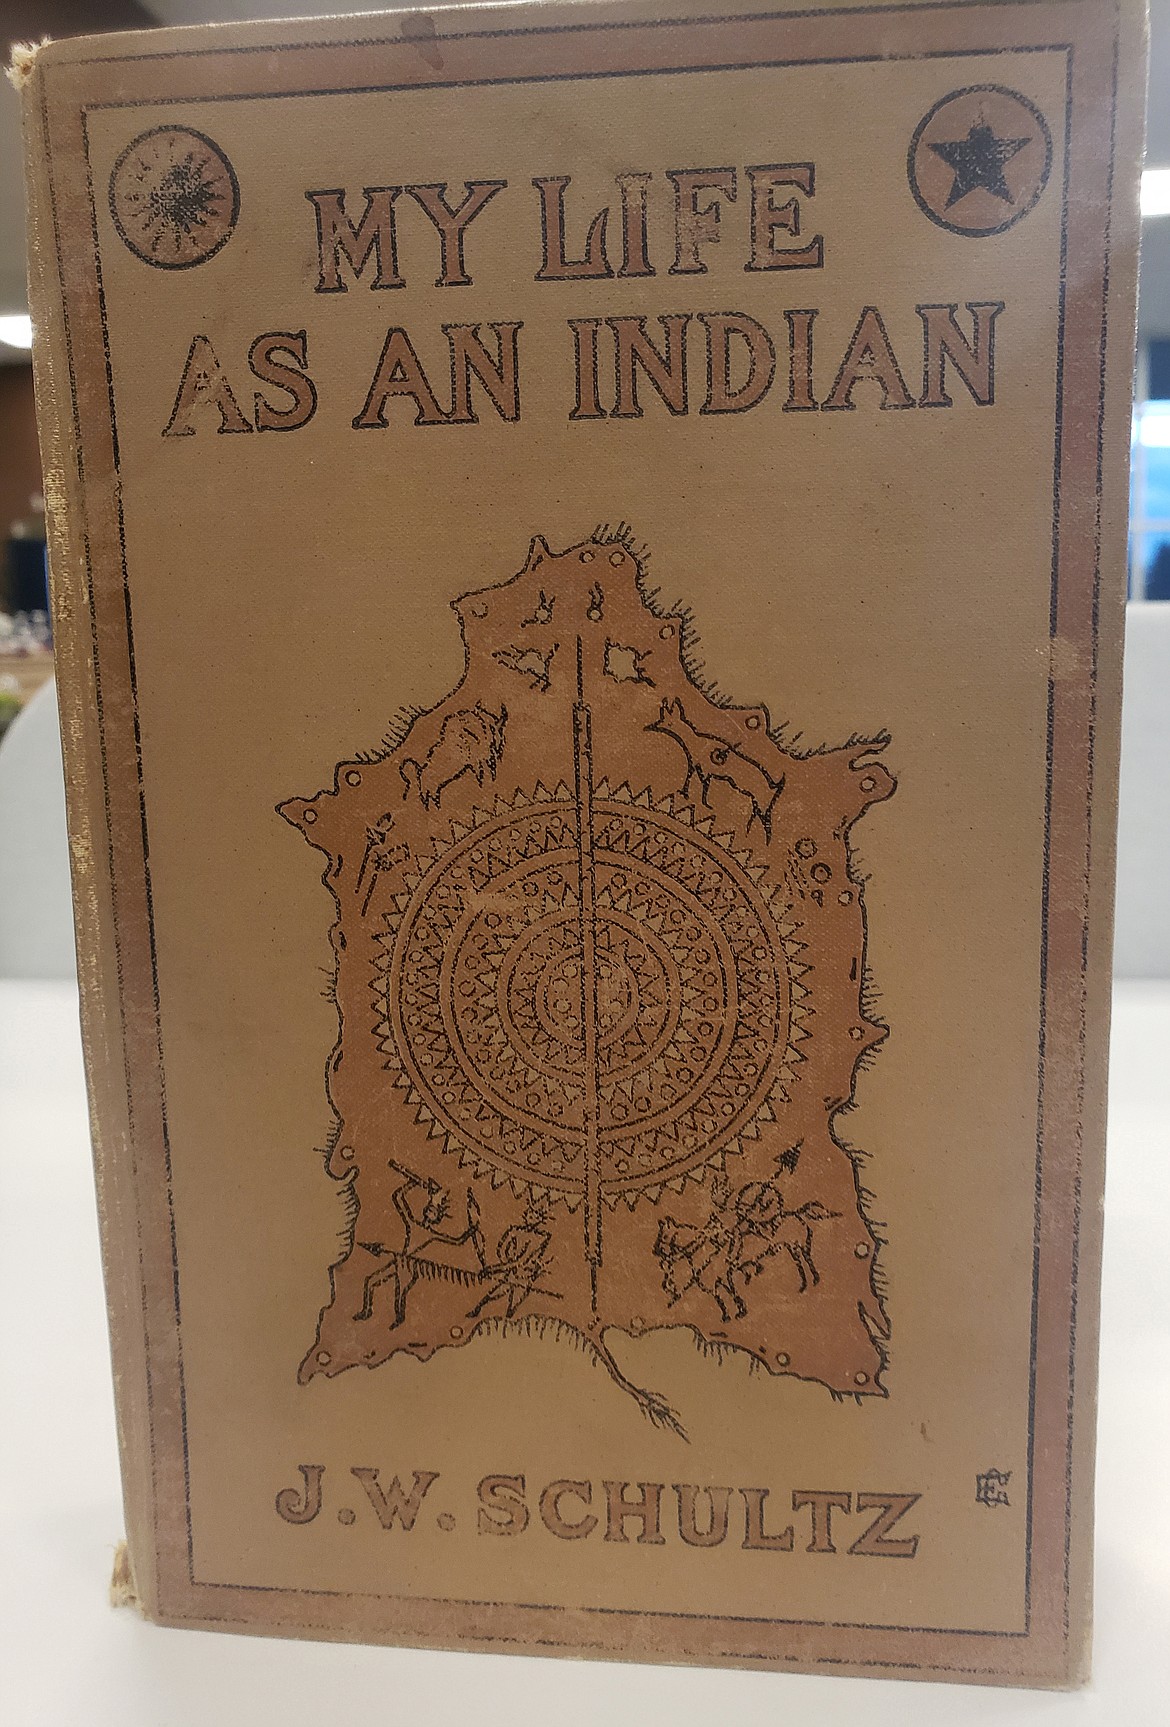 A rare 1907 first edition of James Willard Schultz's memoir "My Life as an Indian.”